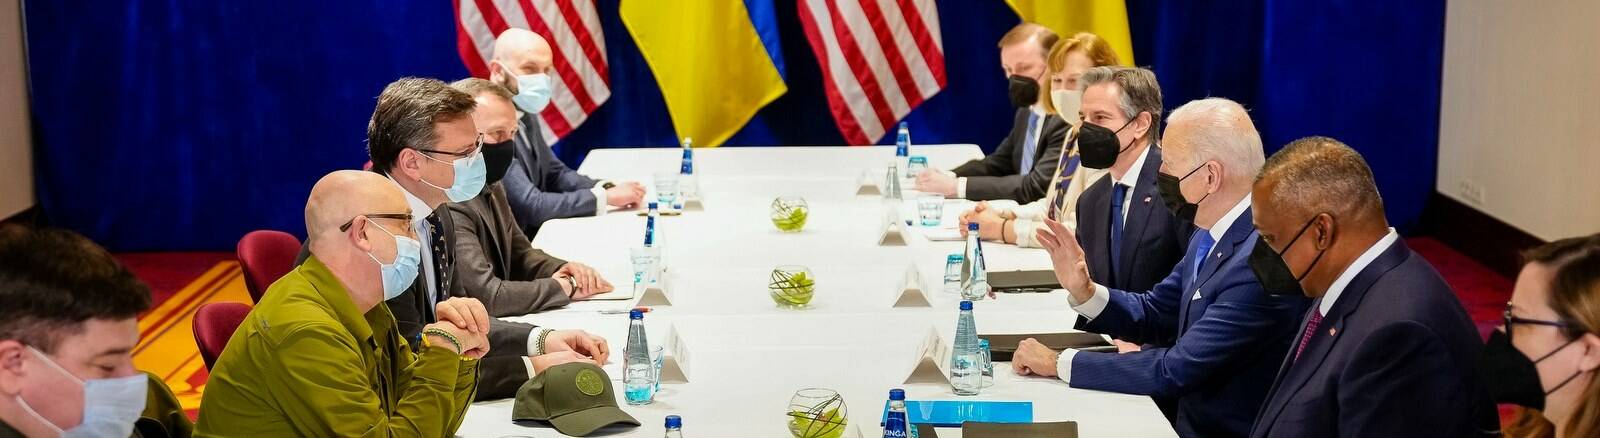 La promessa di Biden ai ministri di Kiev: “Faremo nuovi sforzi per aiutare la vostra difesa”